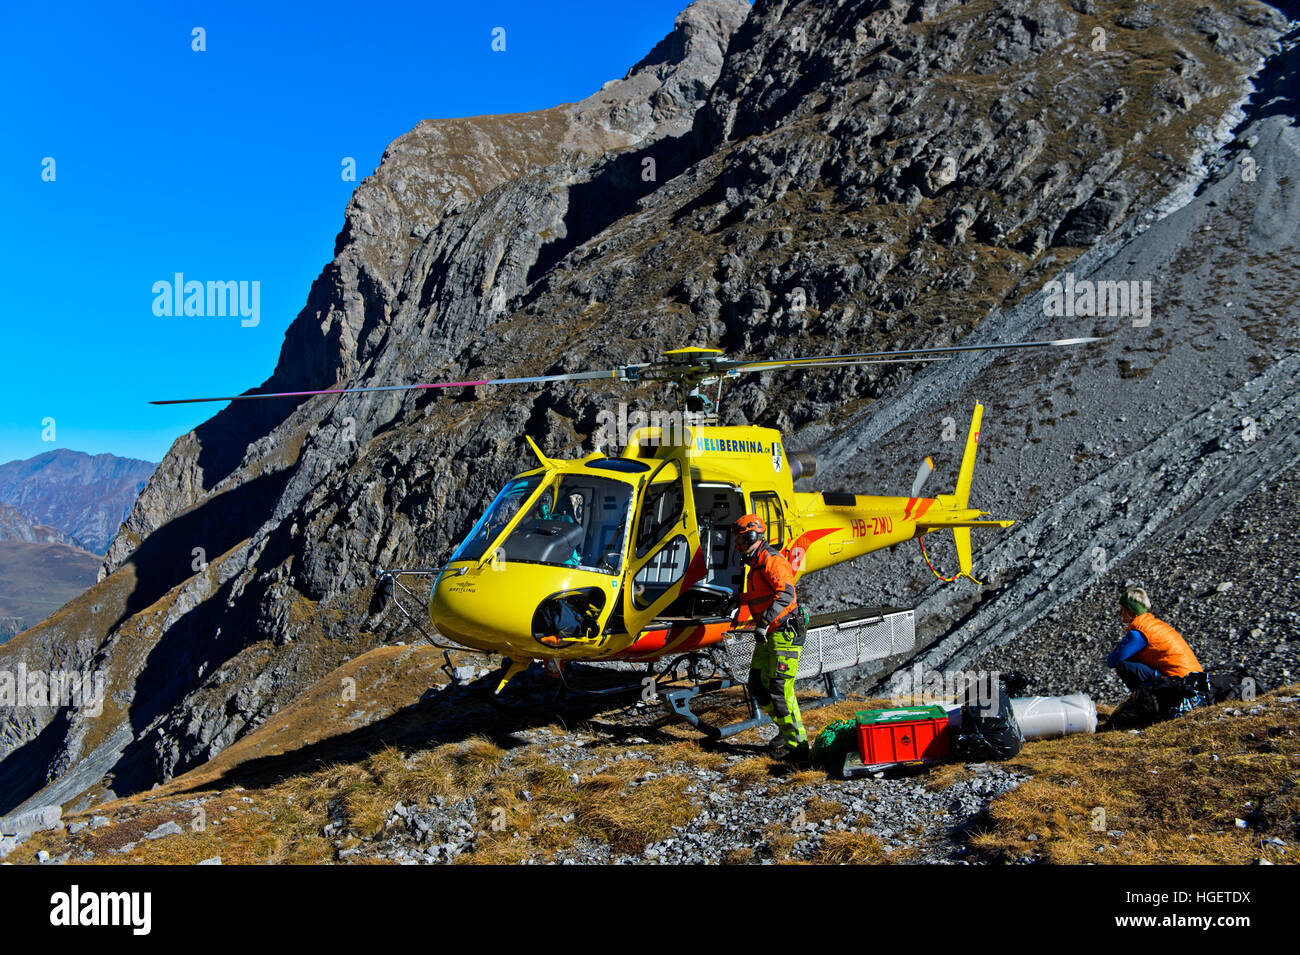 Hubschrauber Eurocopter AS350 Ecureuil der Heli Bernina AG auf einer  bergigen Landeplatz, Val Lischana, Graubünden, Schweiz Stockfotografie -  Alamy